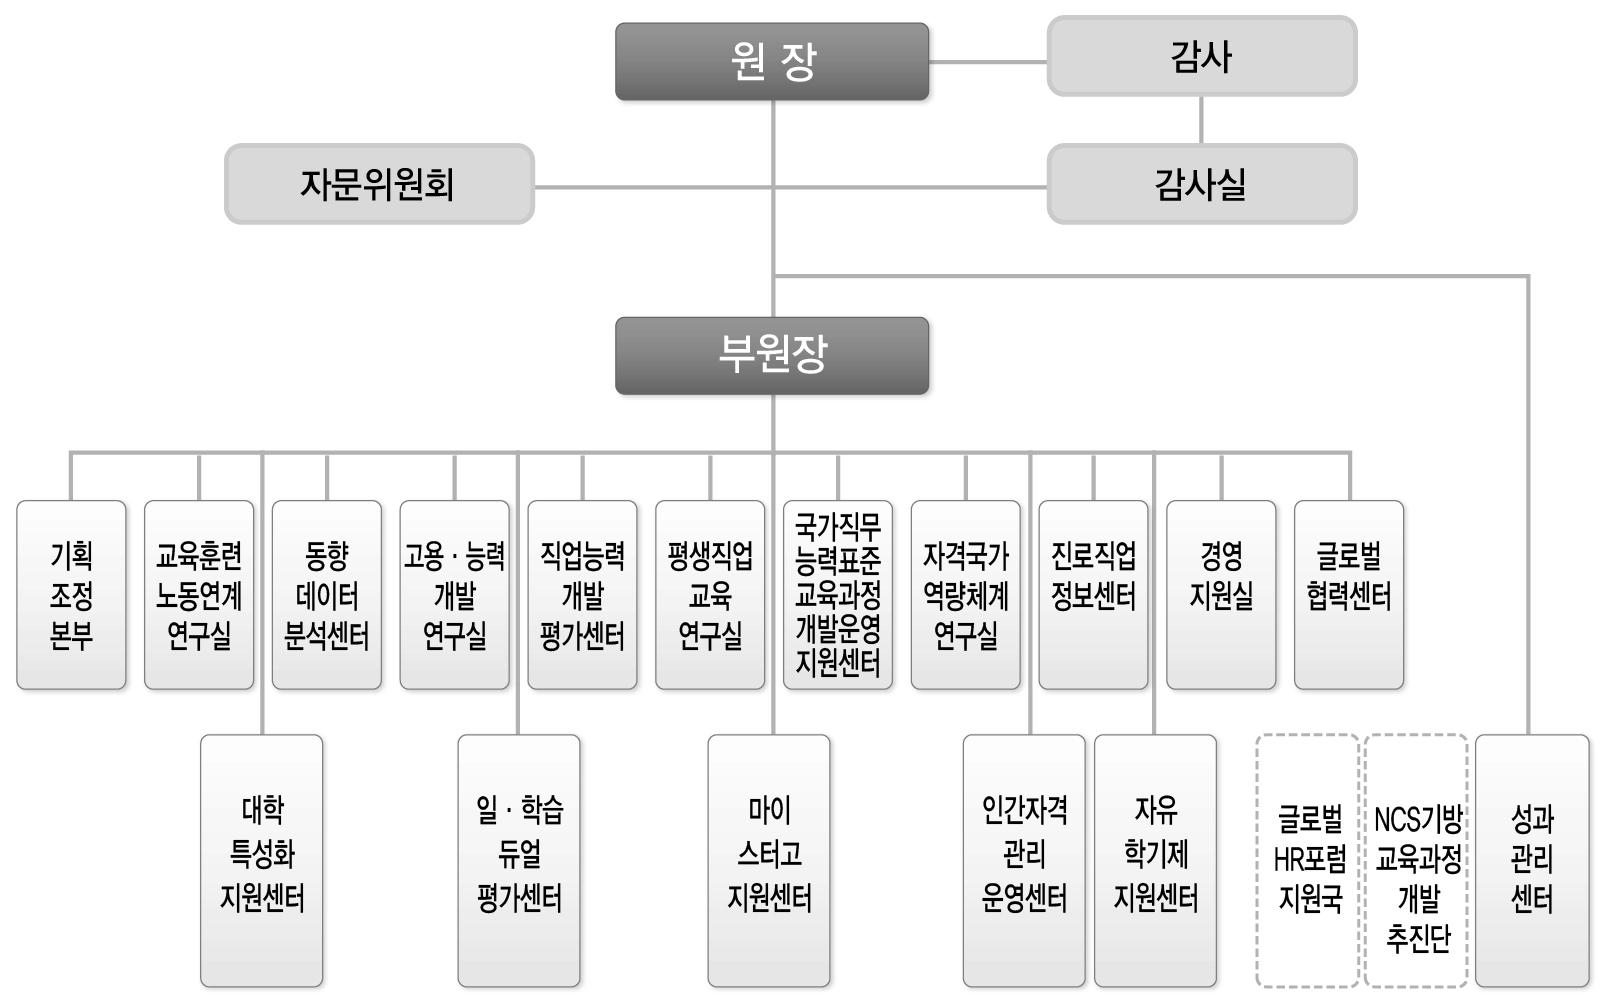 한국직업능력개발원(KRIVET) 조직도